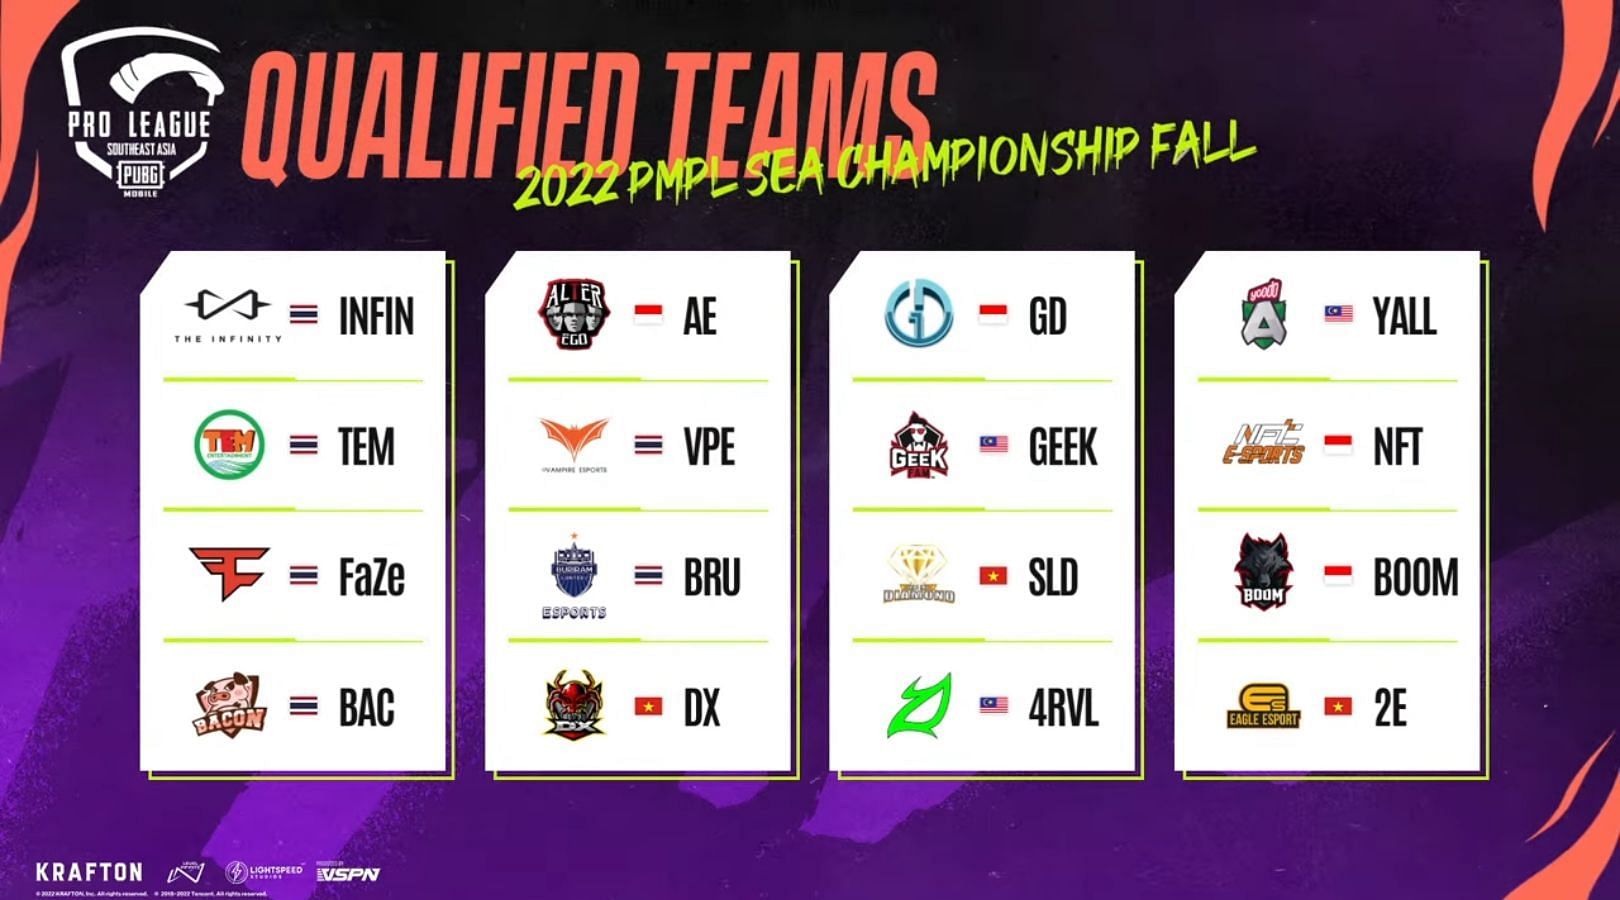 Équipes Qualifiées Pour La Grande Finale D'Automne Du Championnat Pmpl Sea Fall 2022 (Image Via Pubg Mobile)